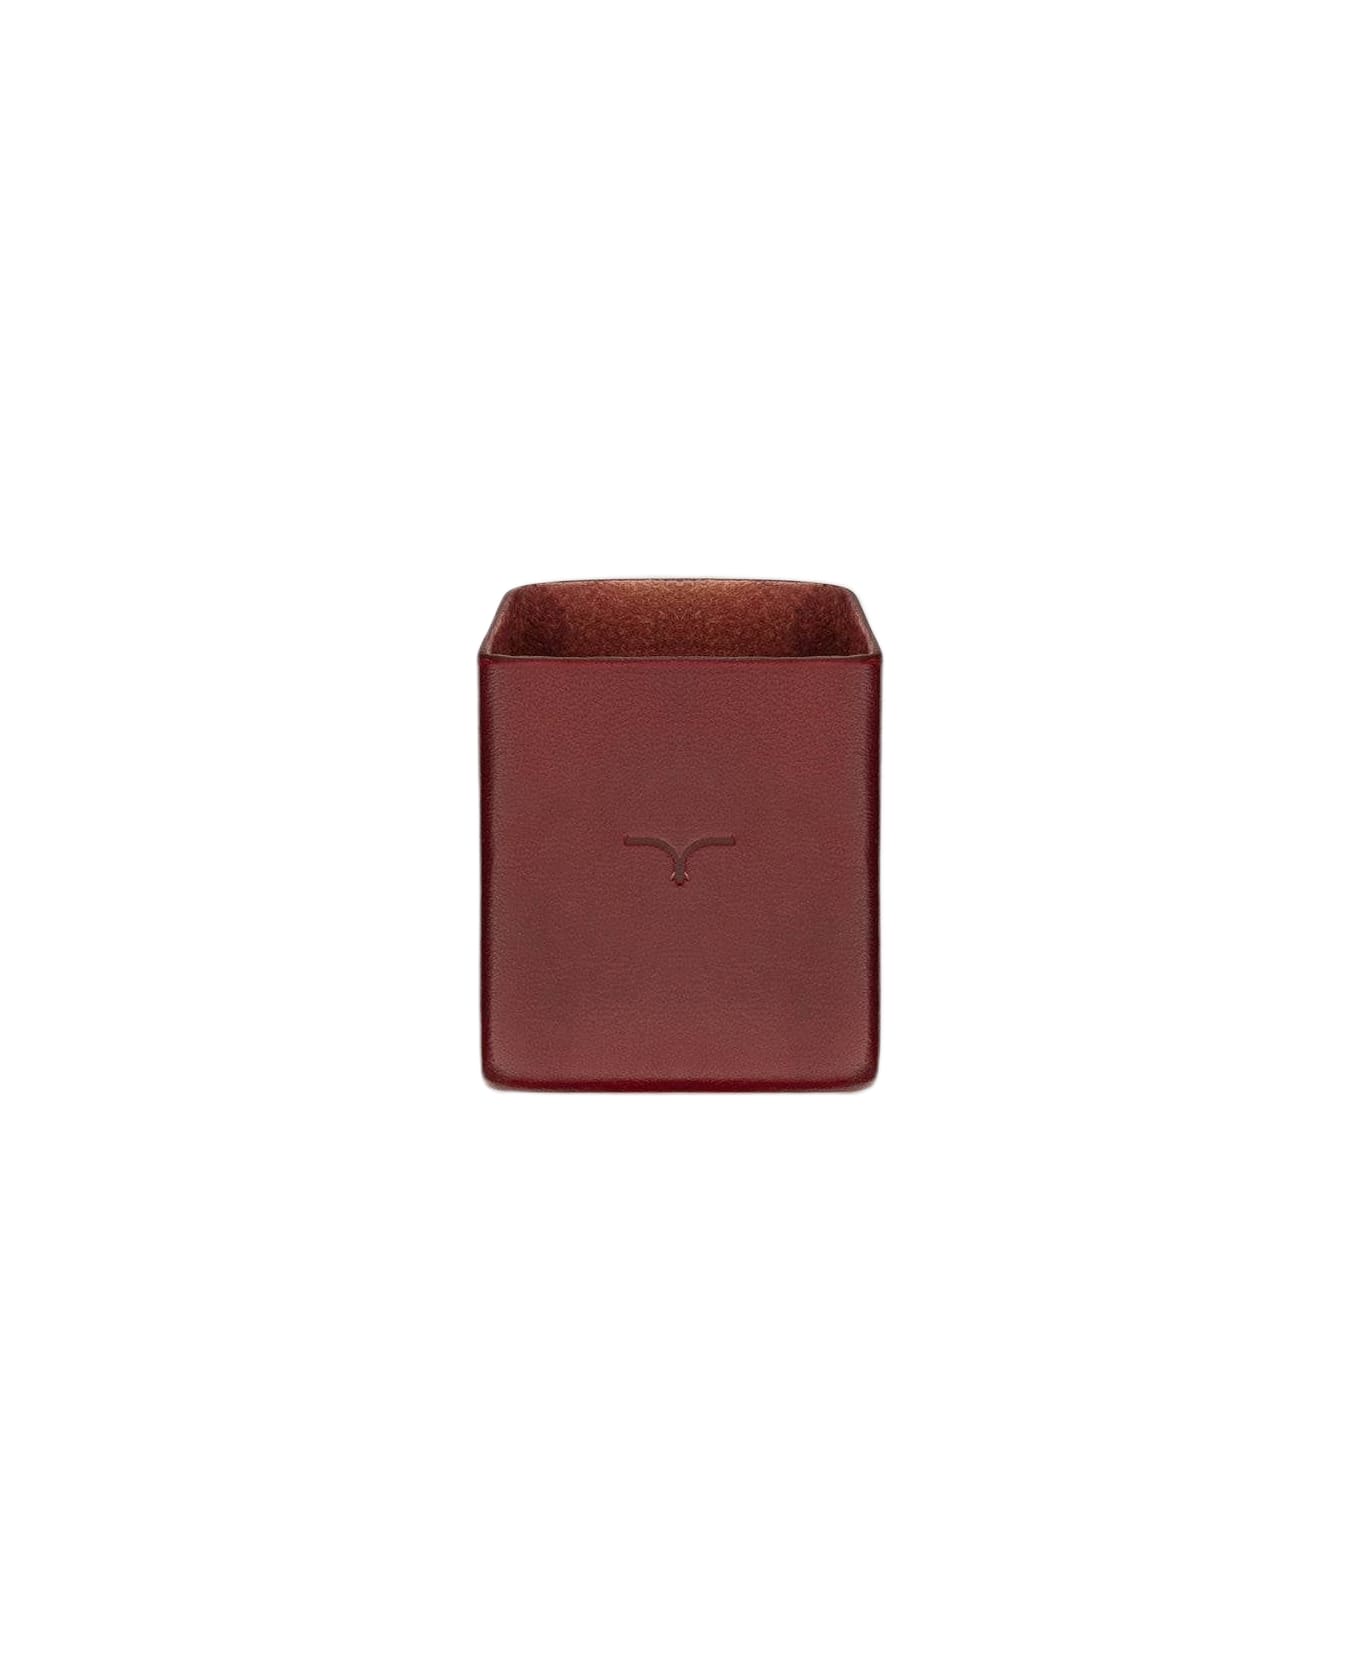 Larusmiani Cigarette Case Cover  - Red